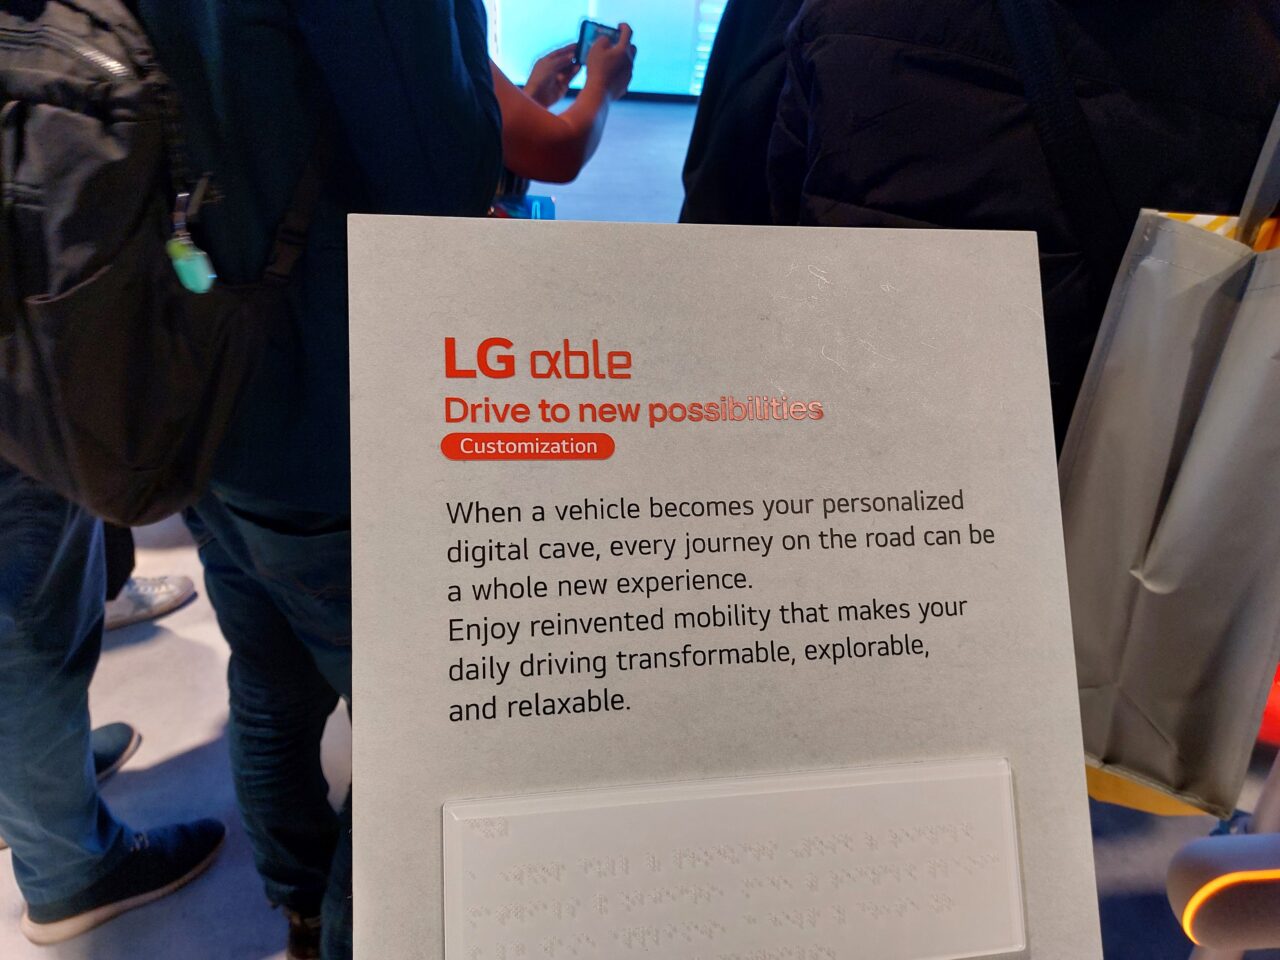 Plakat reklamowy firmy LG z sloganem "LG xable Drive to new possibilities Customization" i opisem produktu, z tłumem osób w tle.